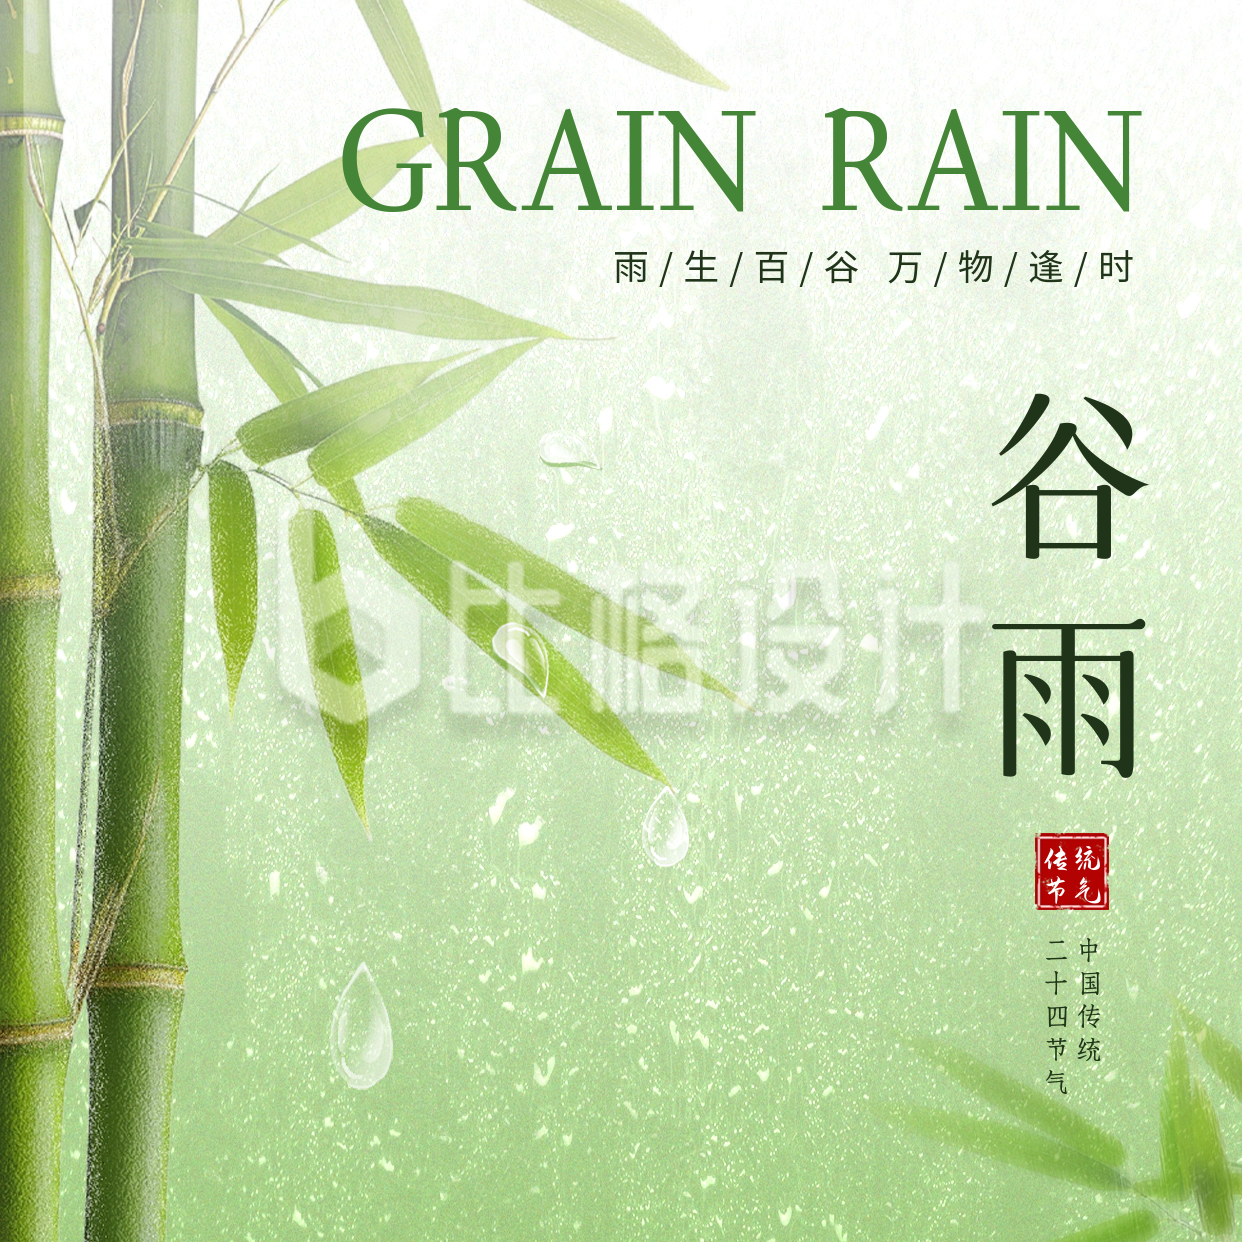 谷雨节气手绘祝福方形海报